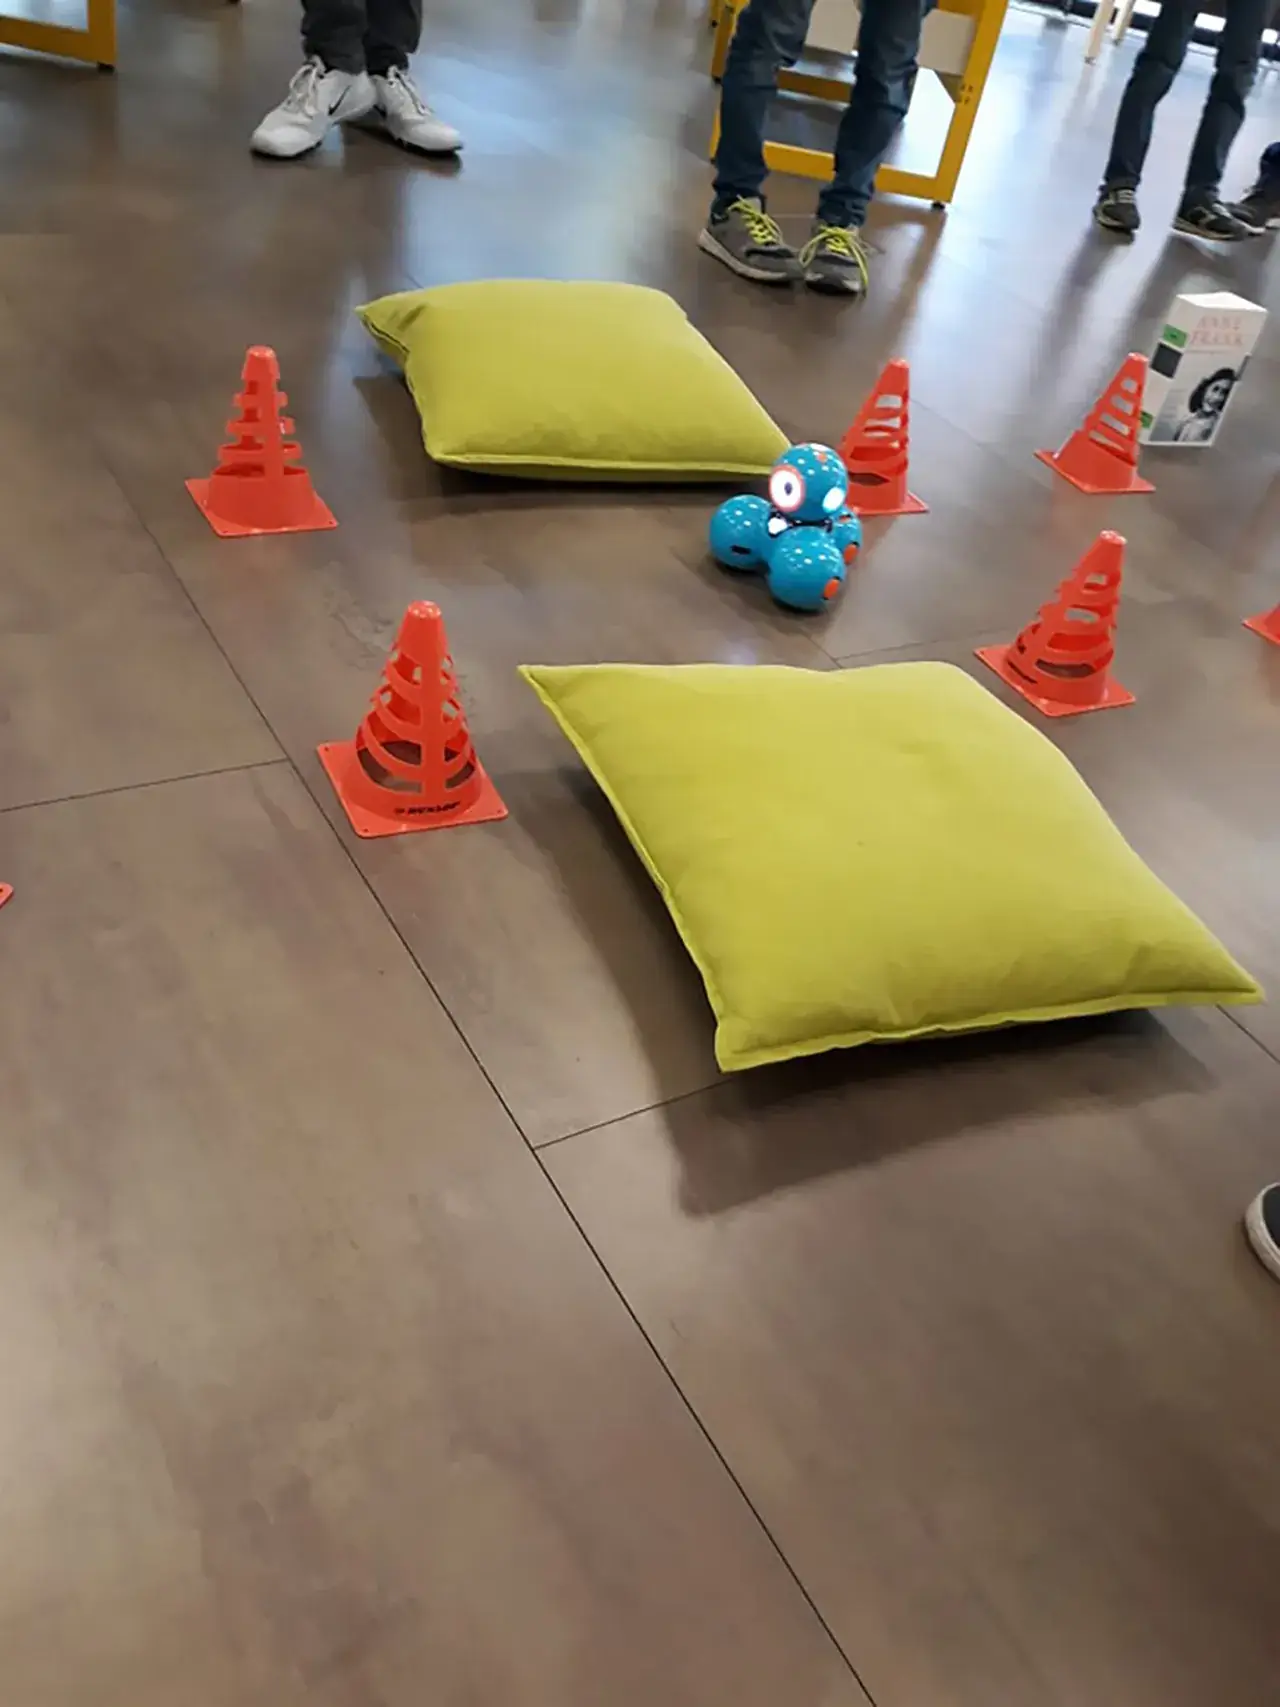 Projekte 2019 - Makerboxen - Makerdays - Dash Roboter - Bild 1 von 2